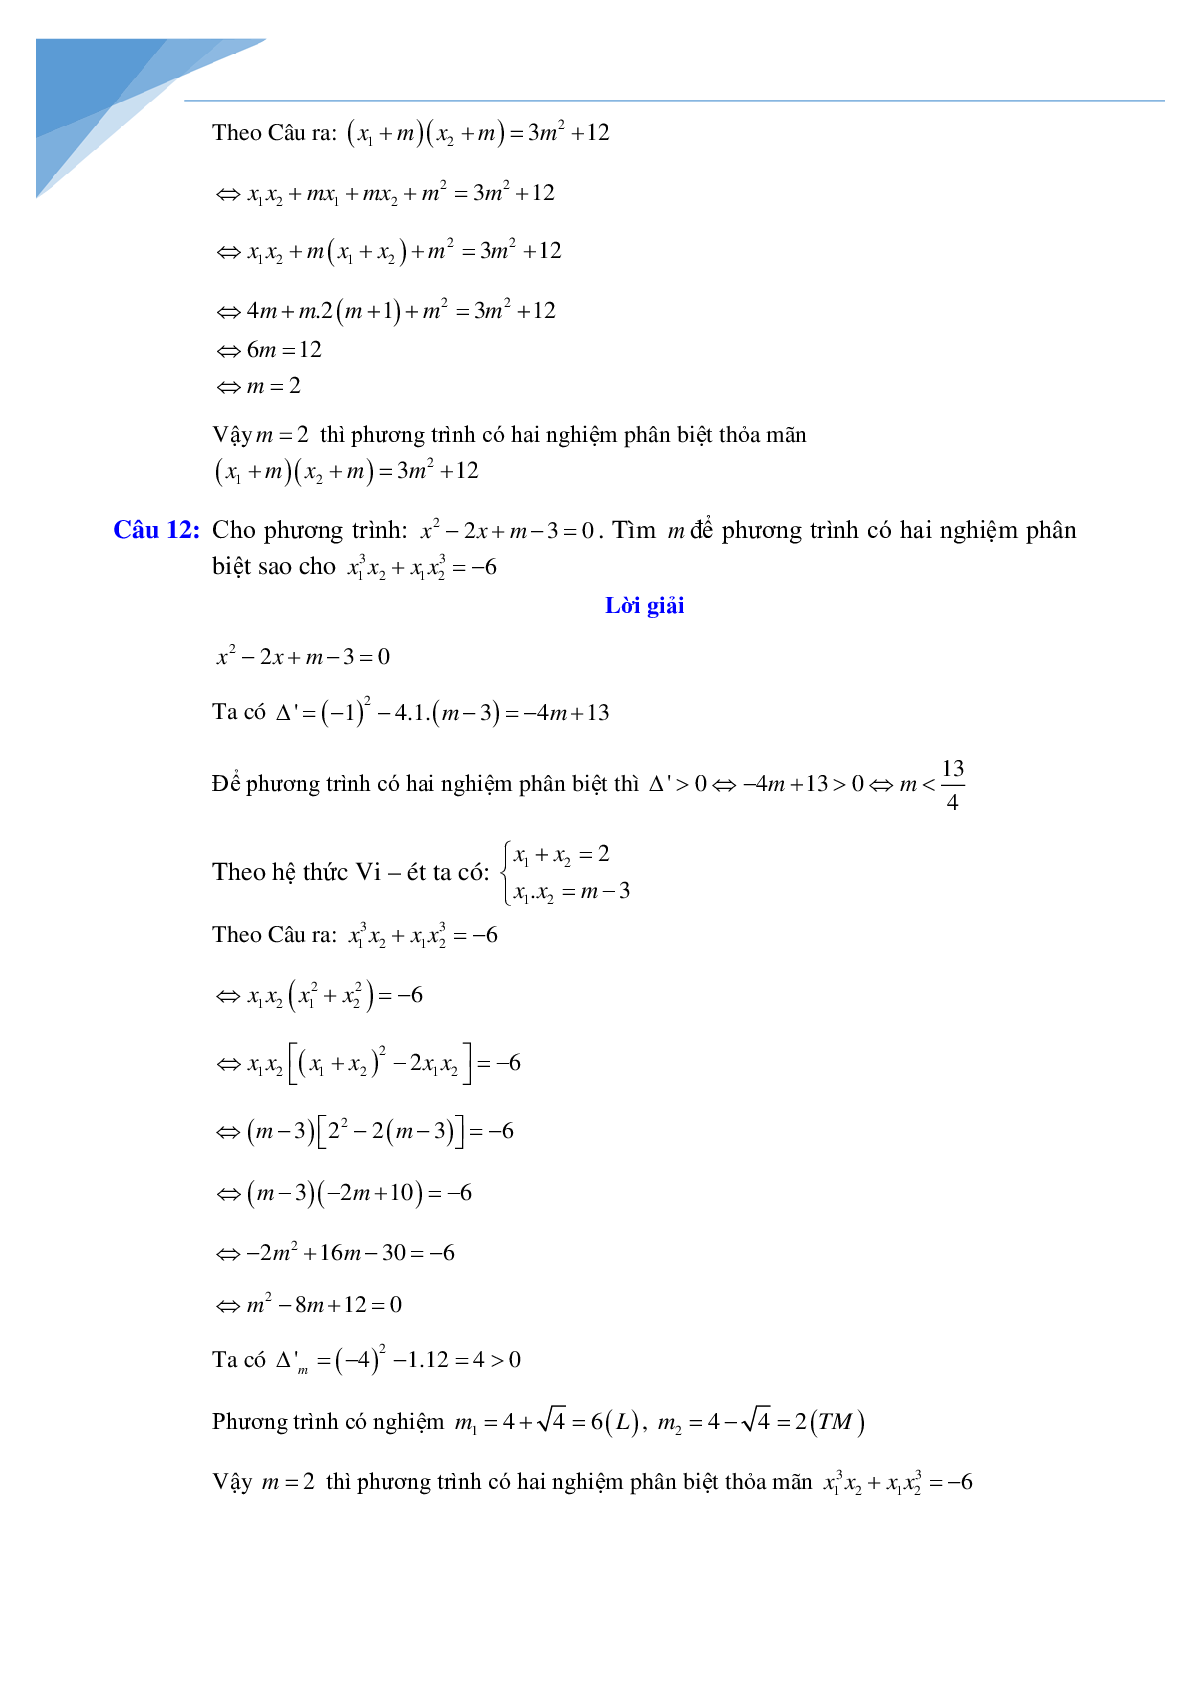 Chuyên đề vi-et luyện thi vào lớp 10 môn toán (trang 10)